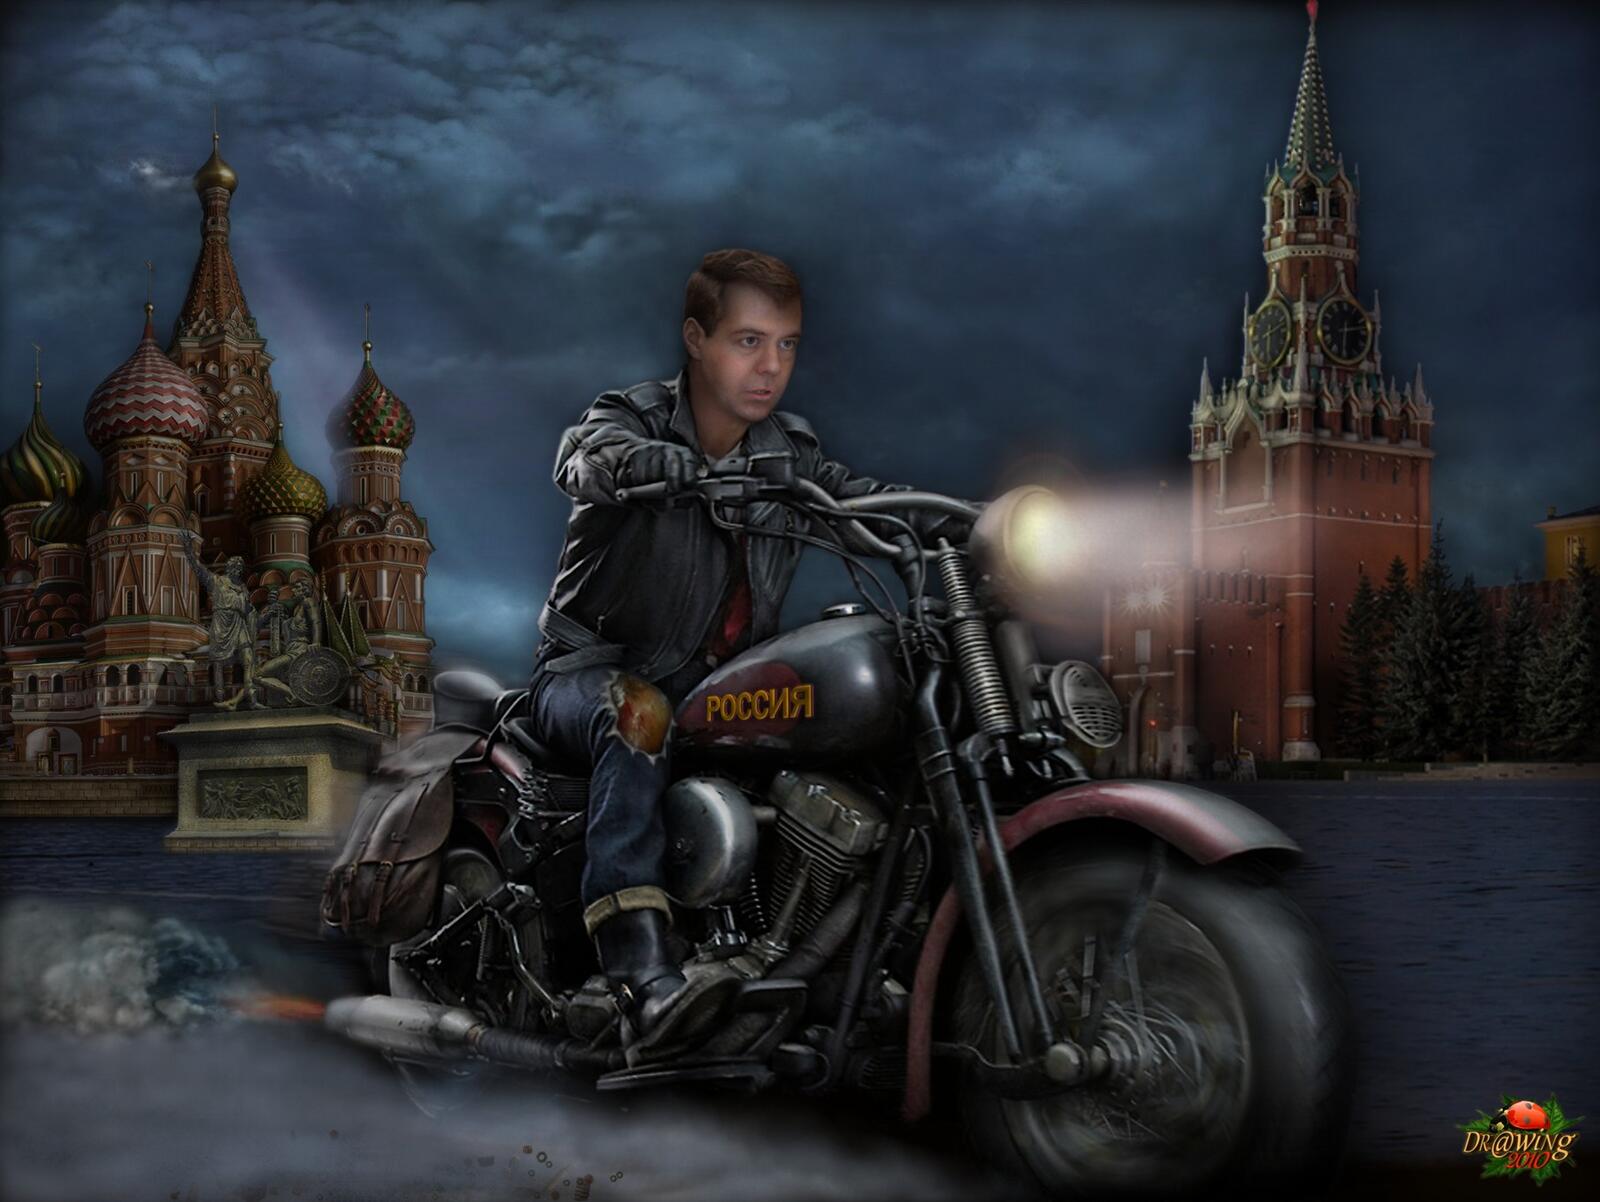 Wallpapers motorcycle medvedev kreml on the desktop